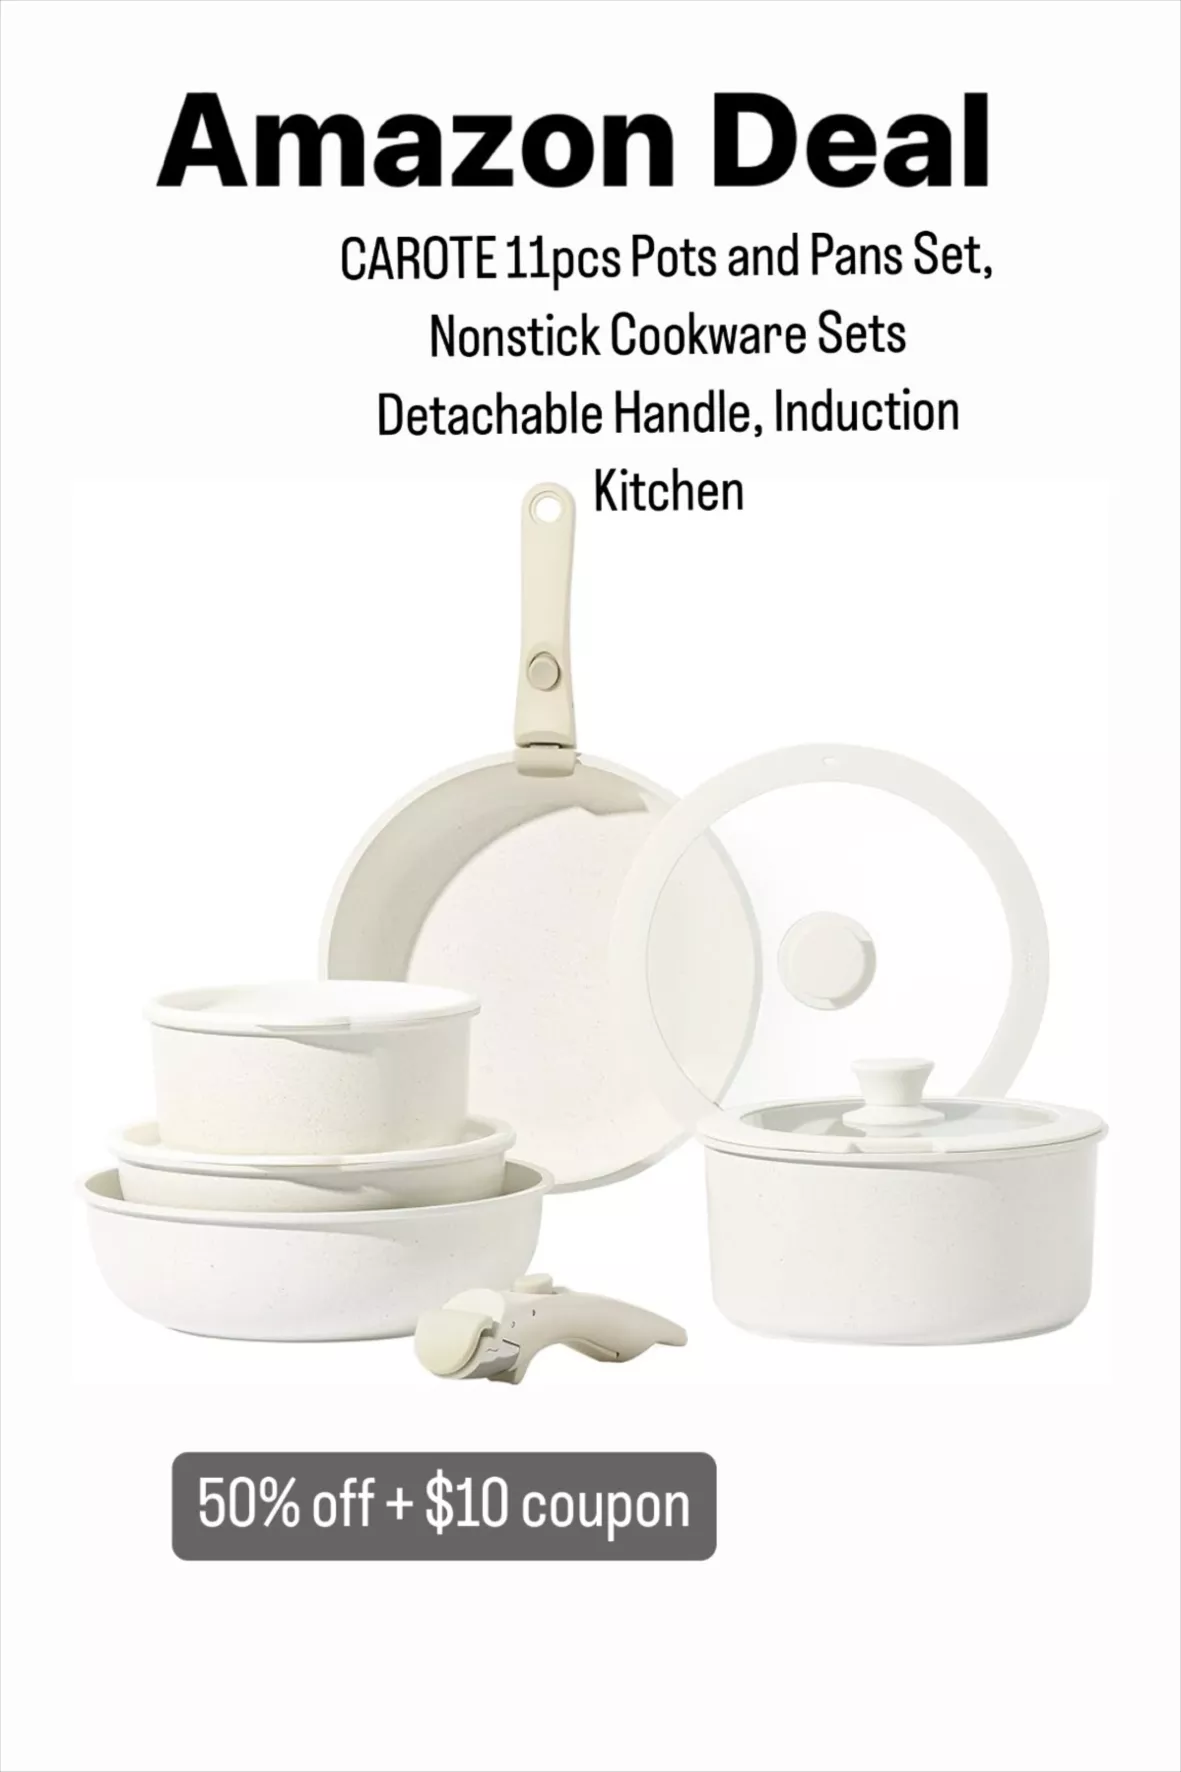 CAROTE 11pcs Pots and Pans Set Nonstick Cookware Sets Detachable